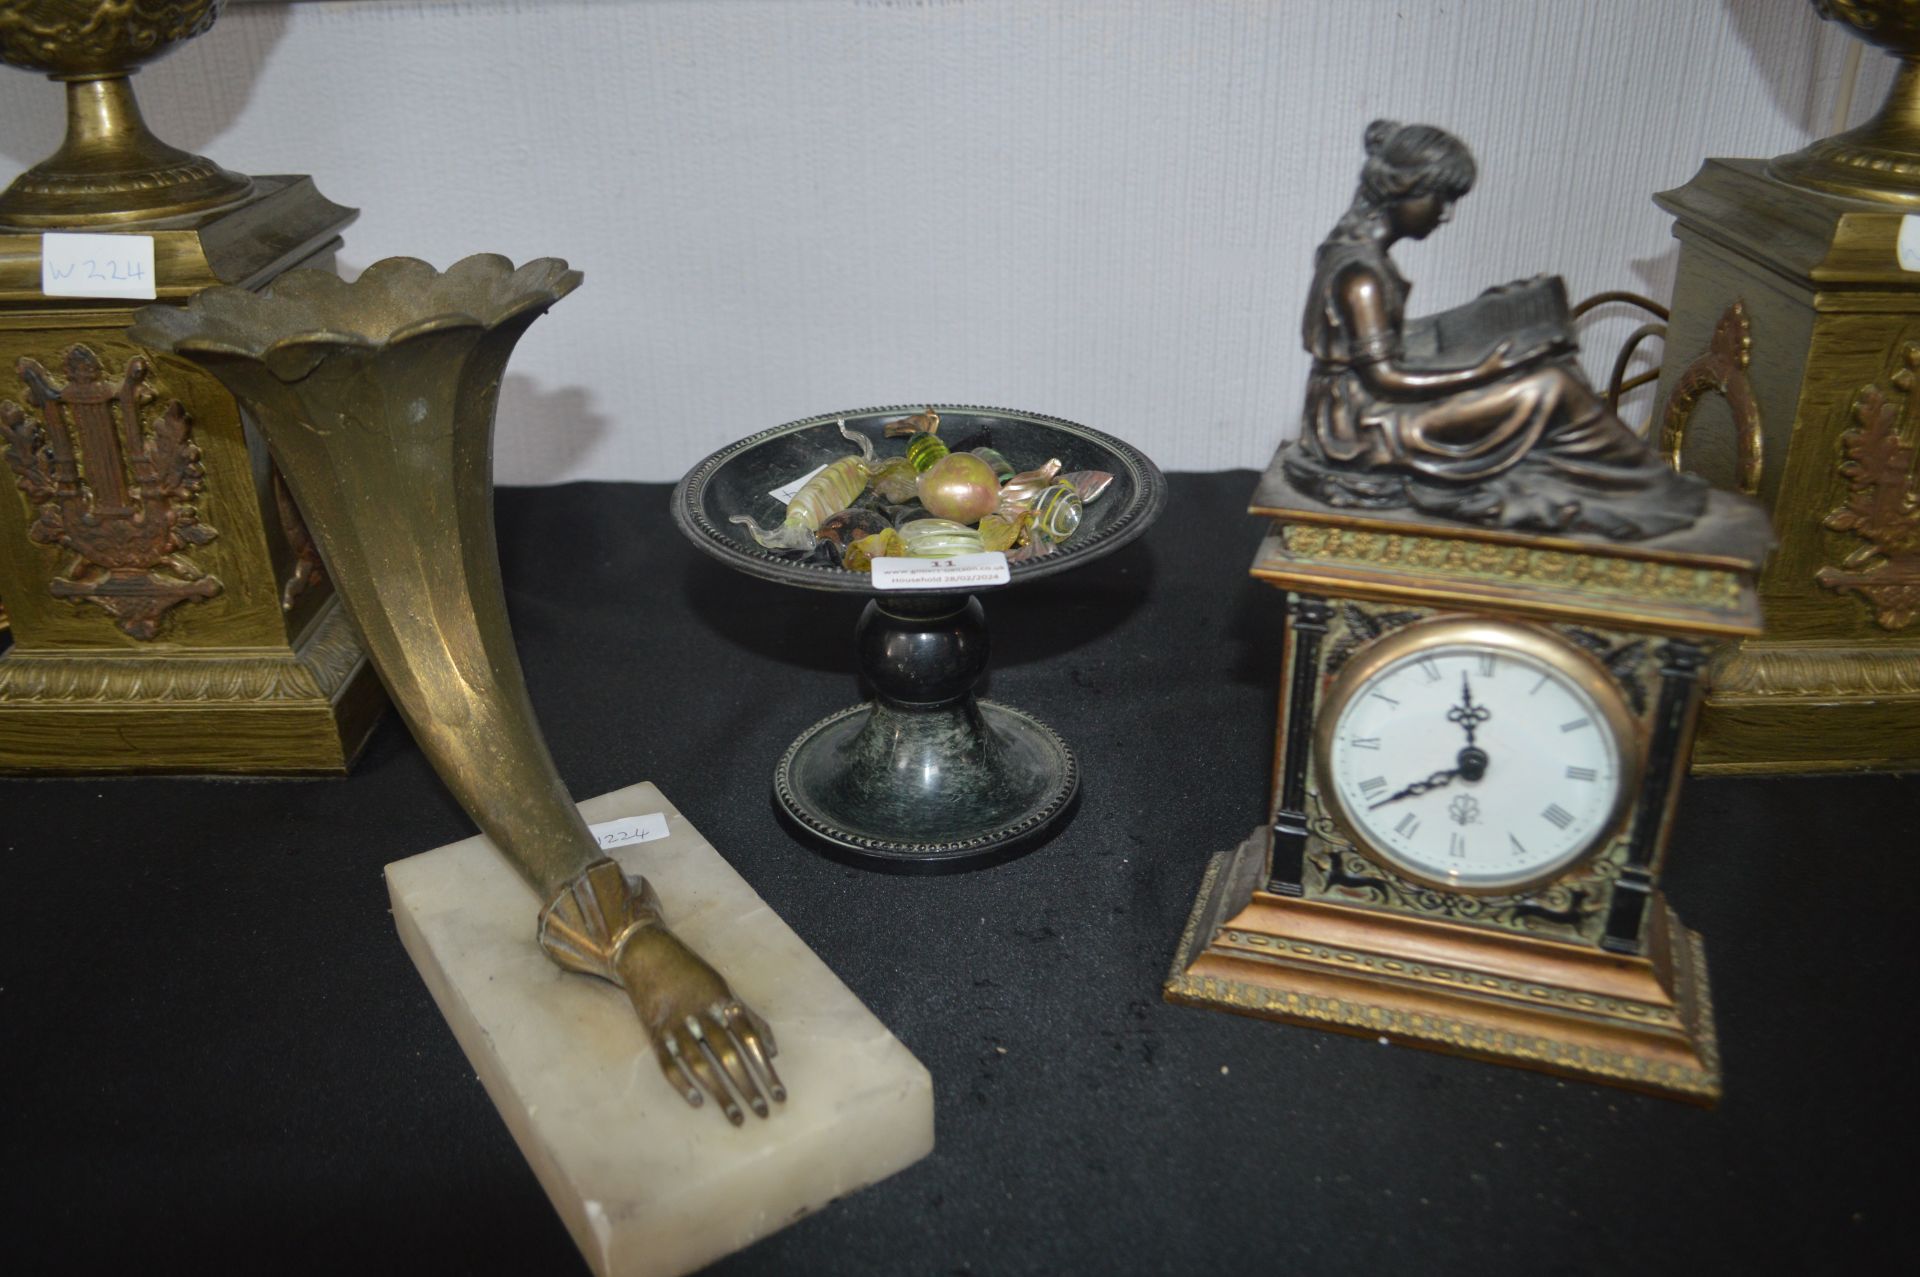 Decorative Classical Ornaments, Clock, and Murano